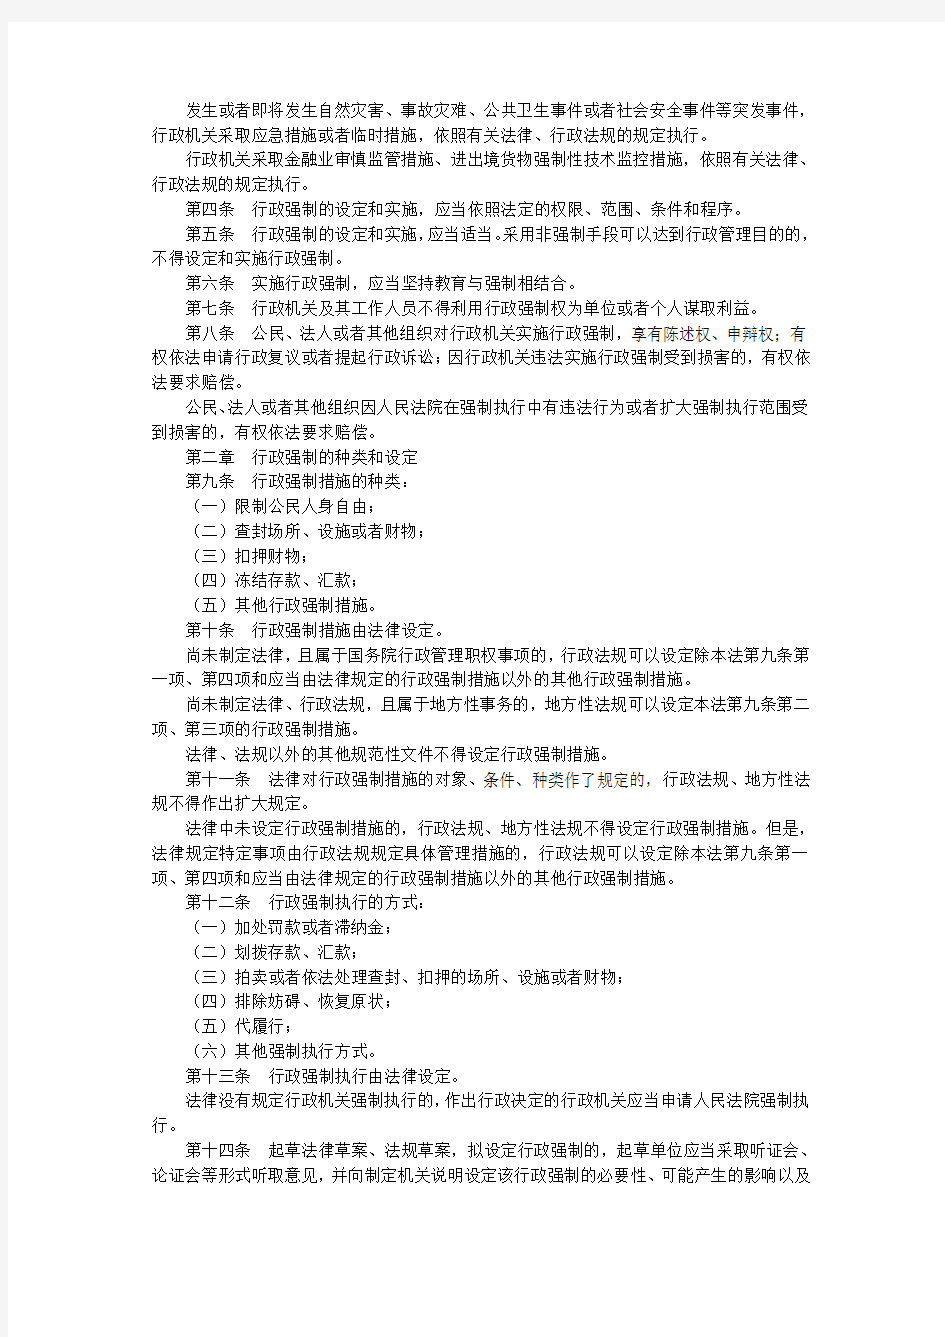 中华人民共和国行政强制法(已编辑好,可直接打印)